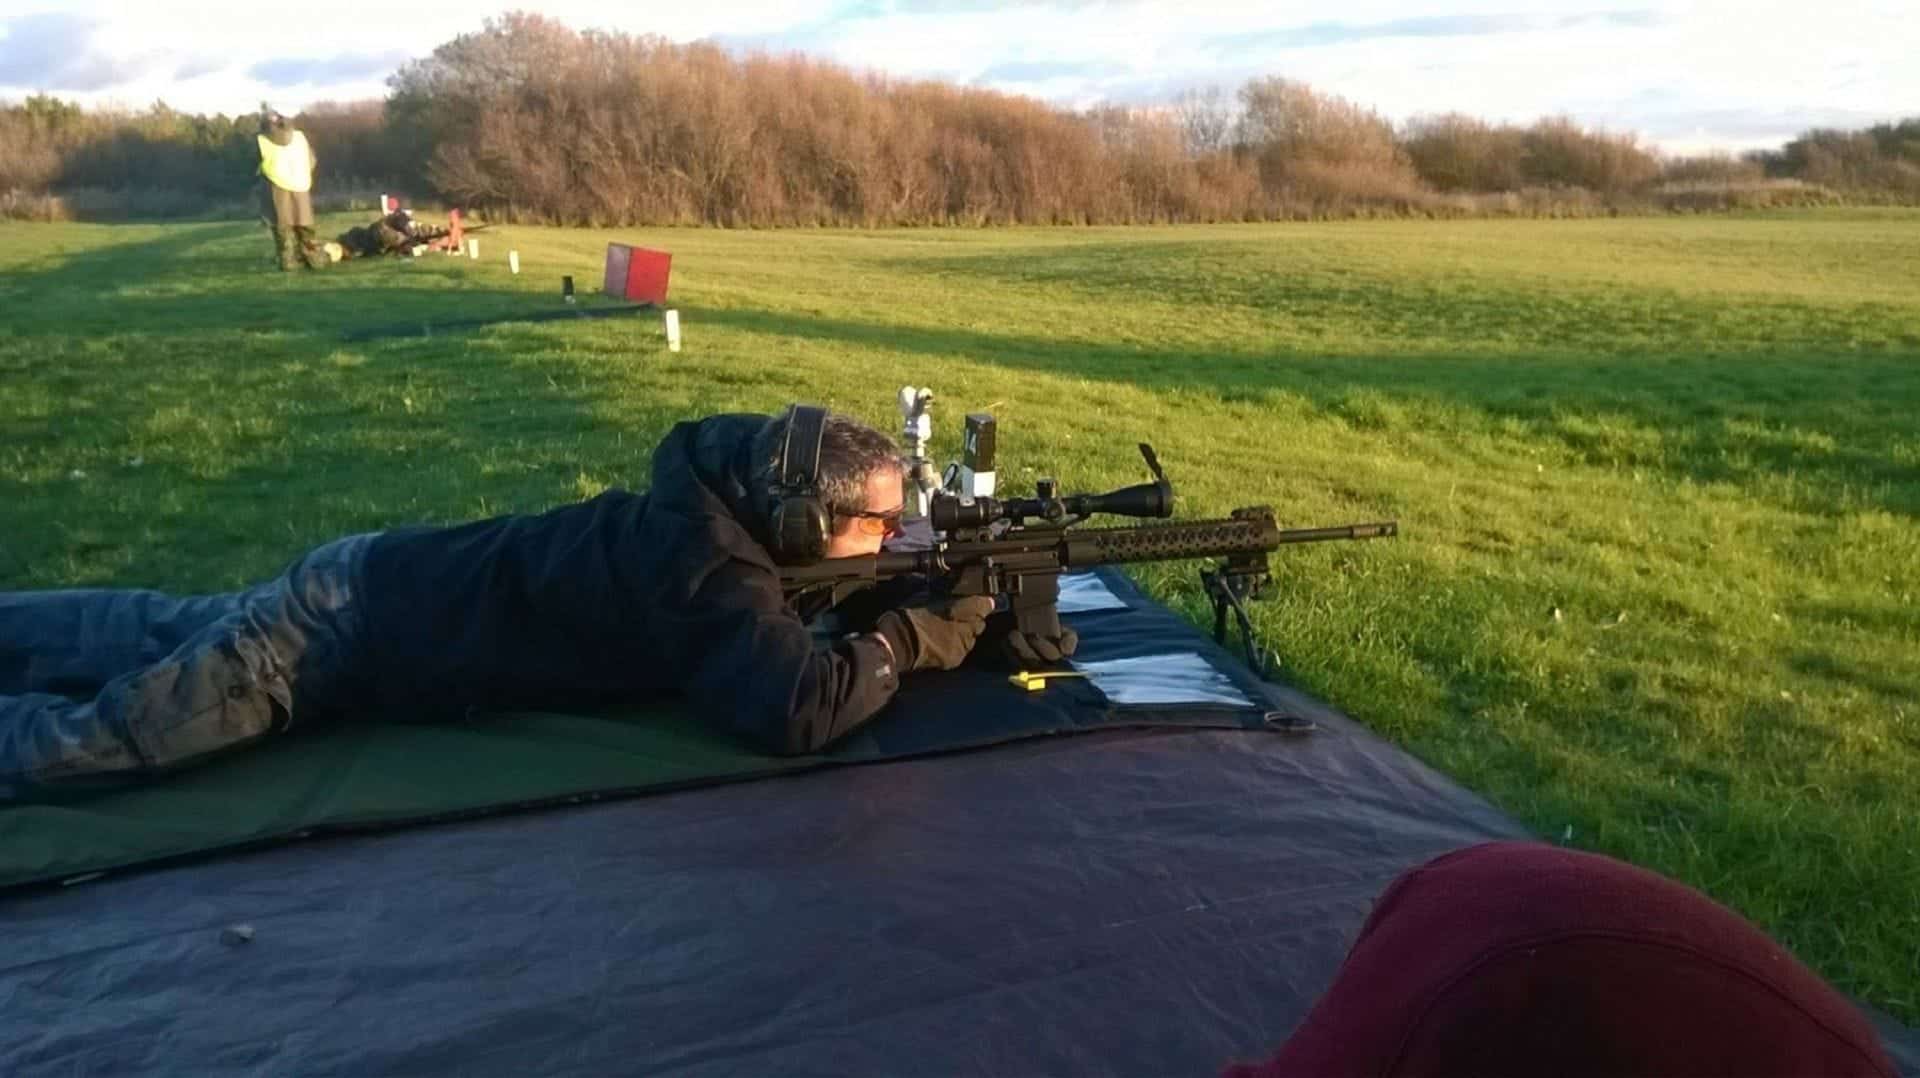 Fulwood Shooting Club in UK